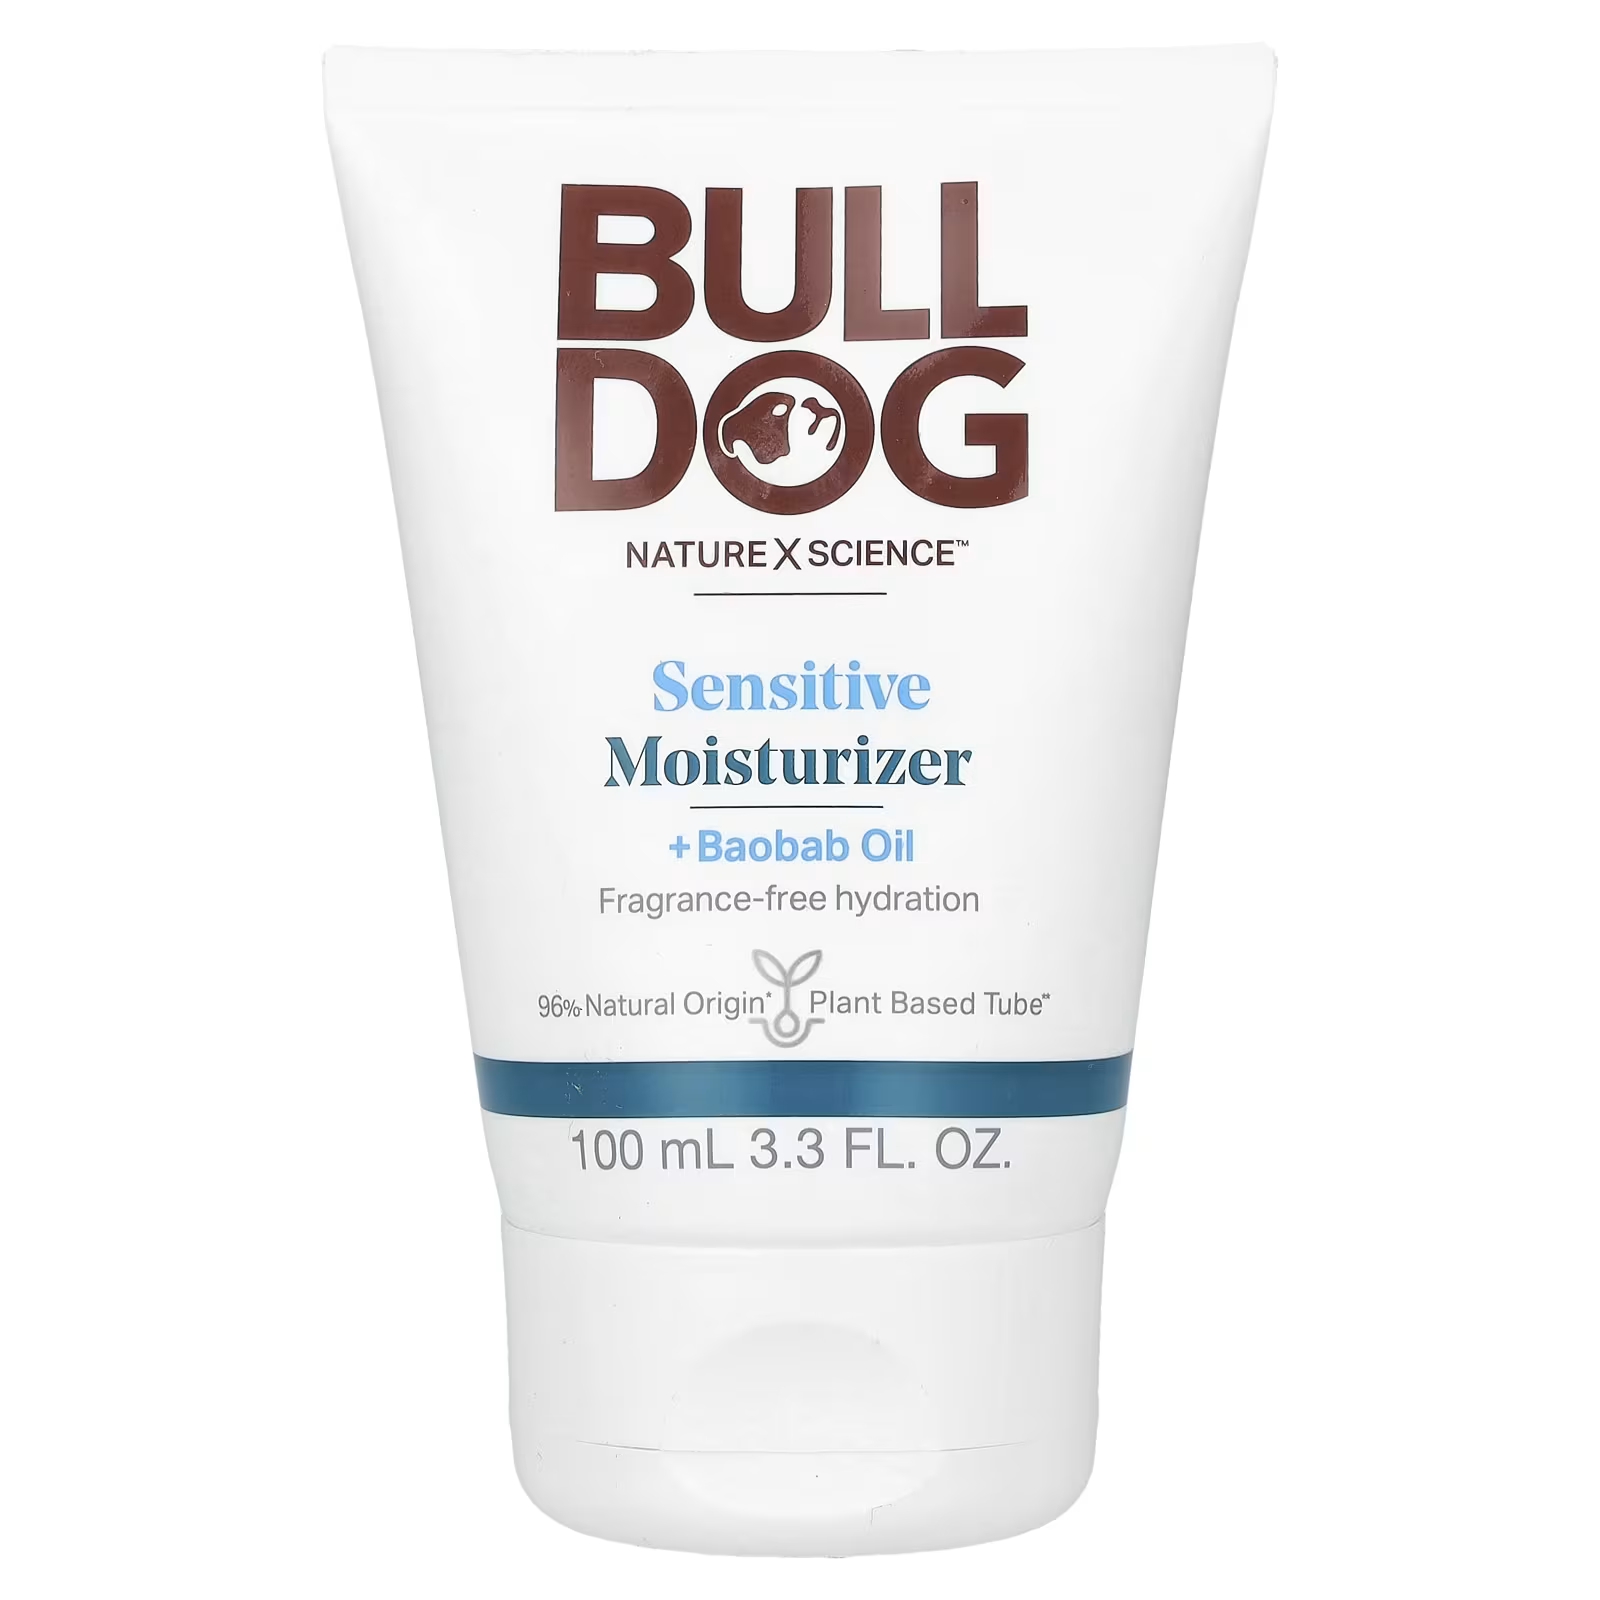 Крем увлажняющий Bulldog Skincare For Men для чувствительной кожи, 100 мл bulldog skincare for men увлажняющий крем для жирной кожи лица 100 мл 3 3 жидк унции